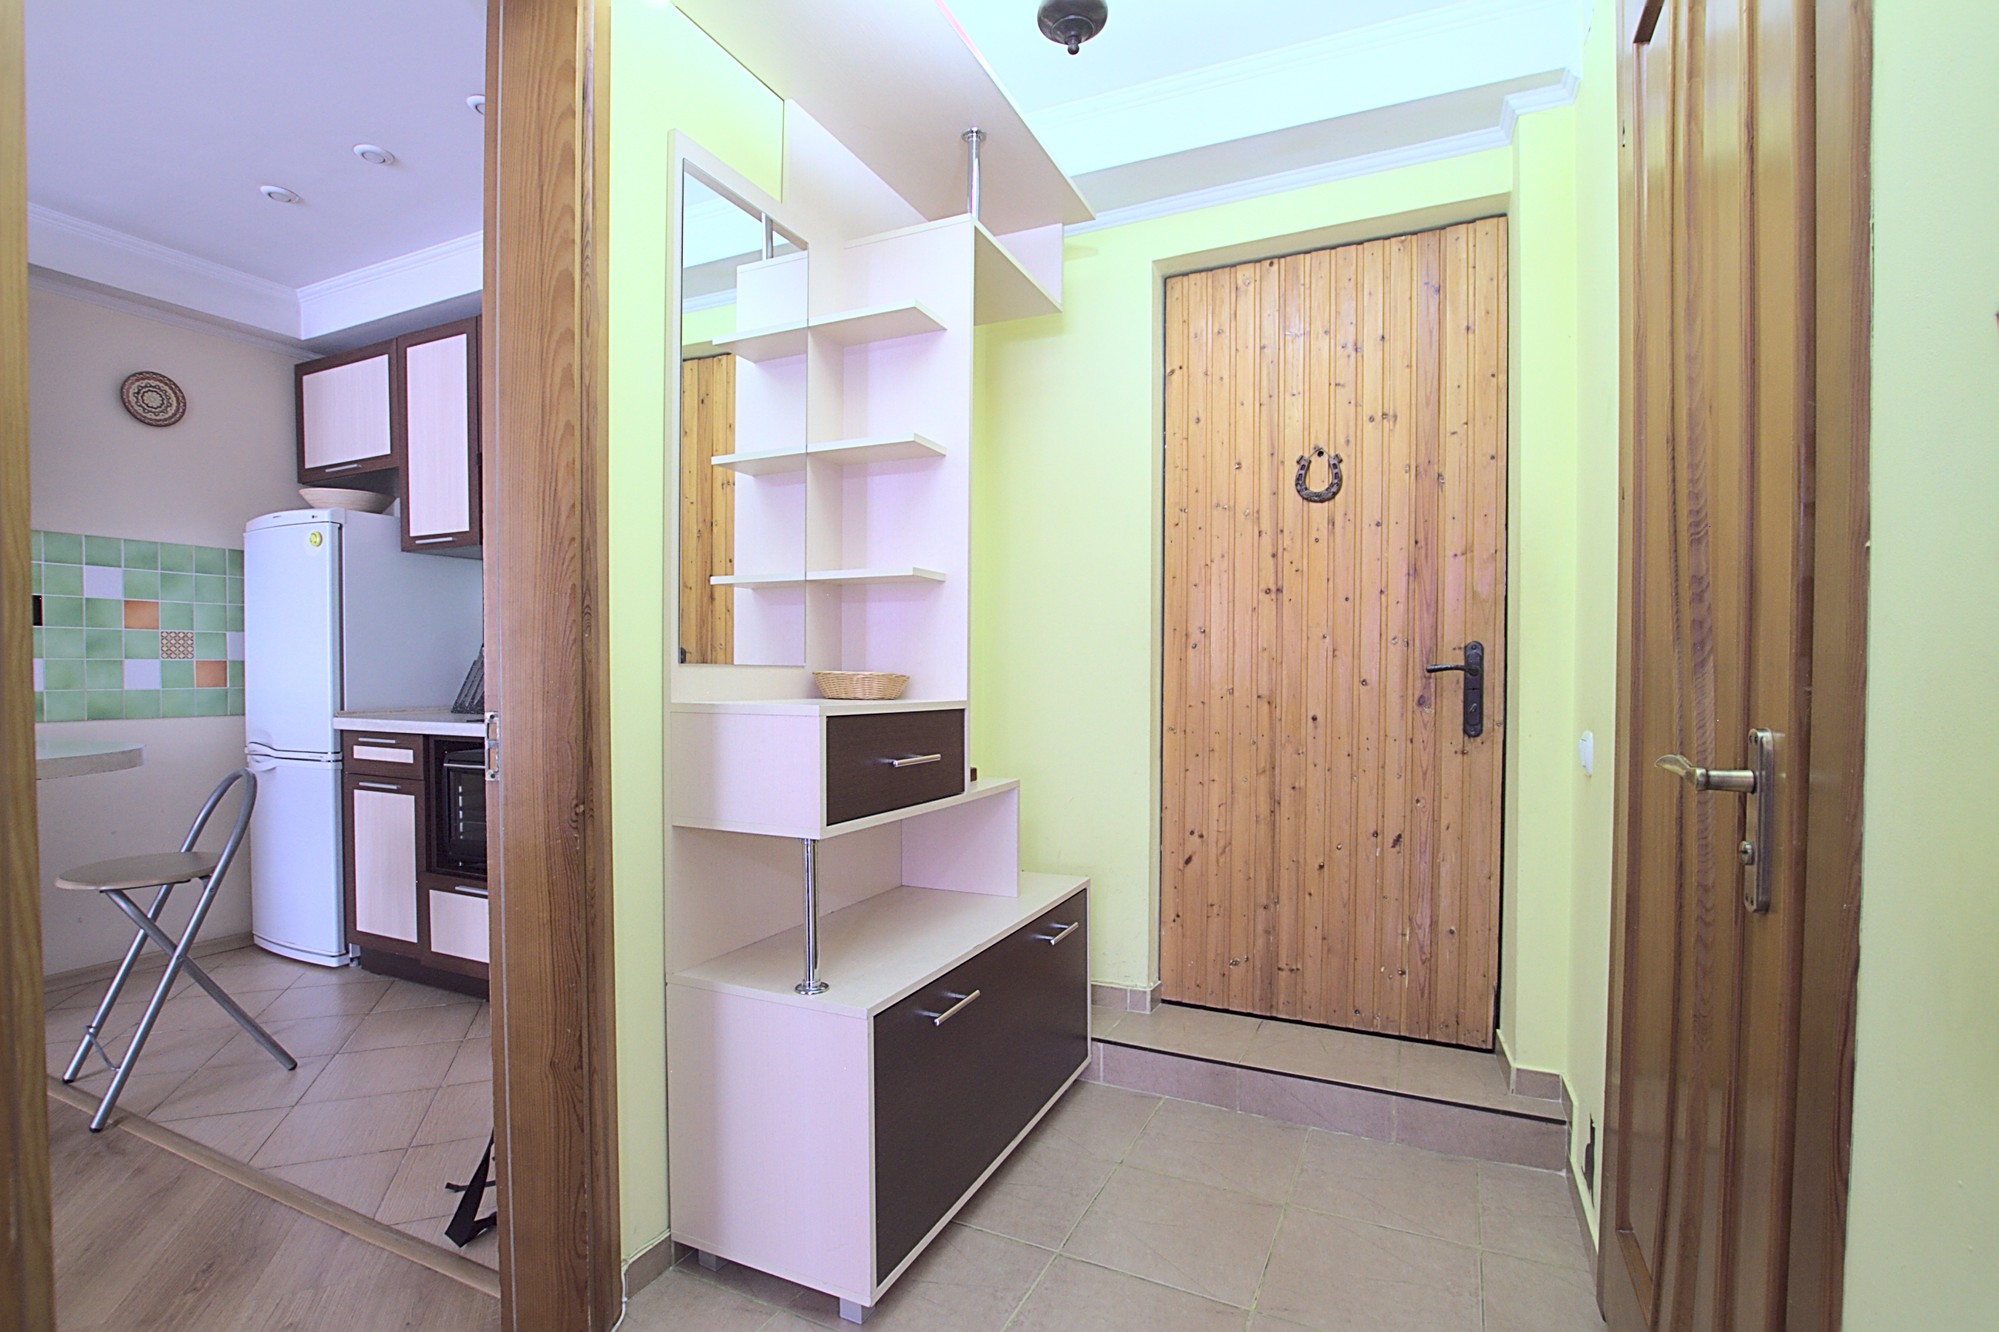 Lavender Apartment это квартира в аренду в Кишиневе имеющая 2 комнаты в аренду в Кишиневе - Chisinau, Moldova